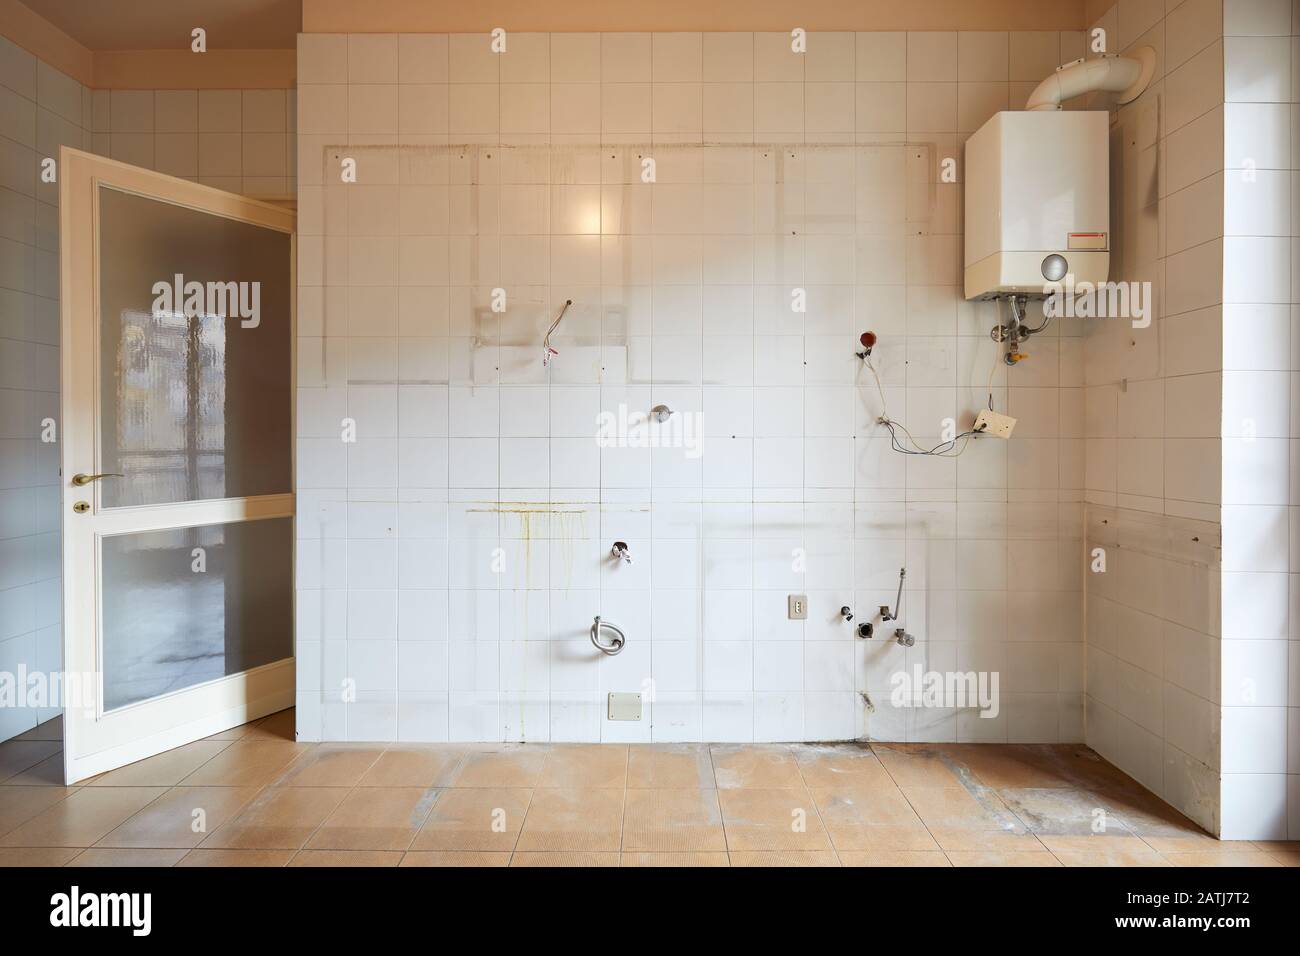 Vecchio muro di cucina vuoto con piastrelle bianche e sporche all'interno dell'appartamento Foto Stock